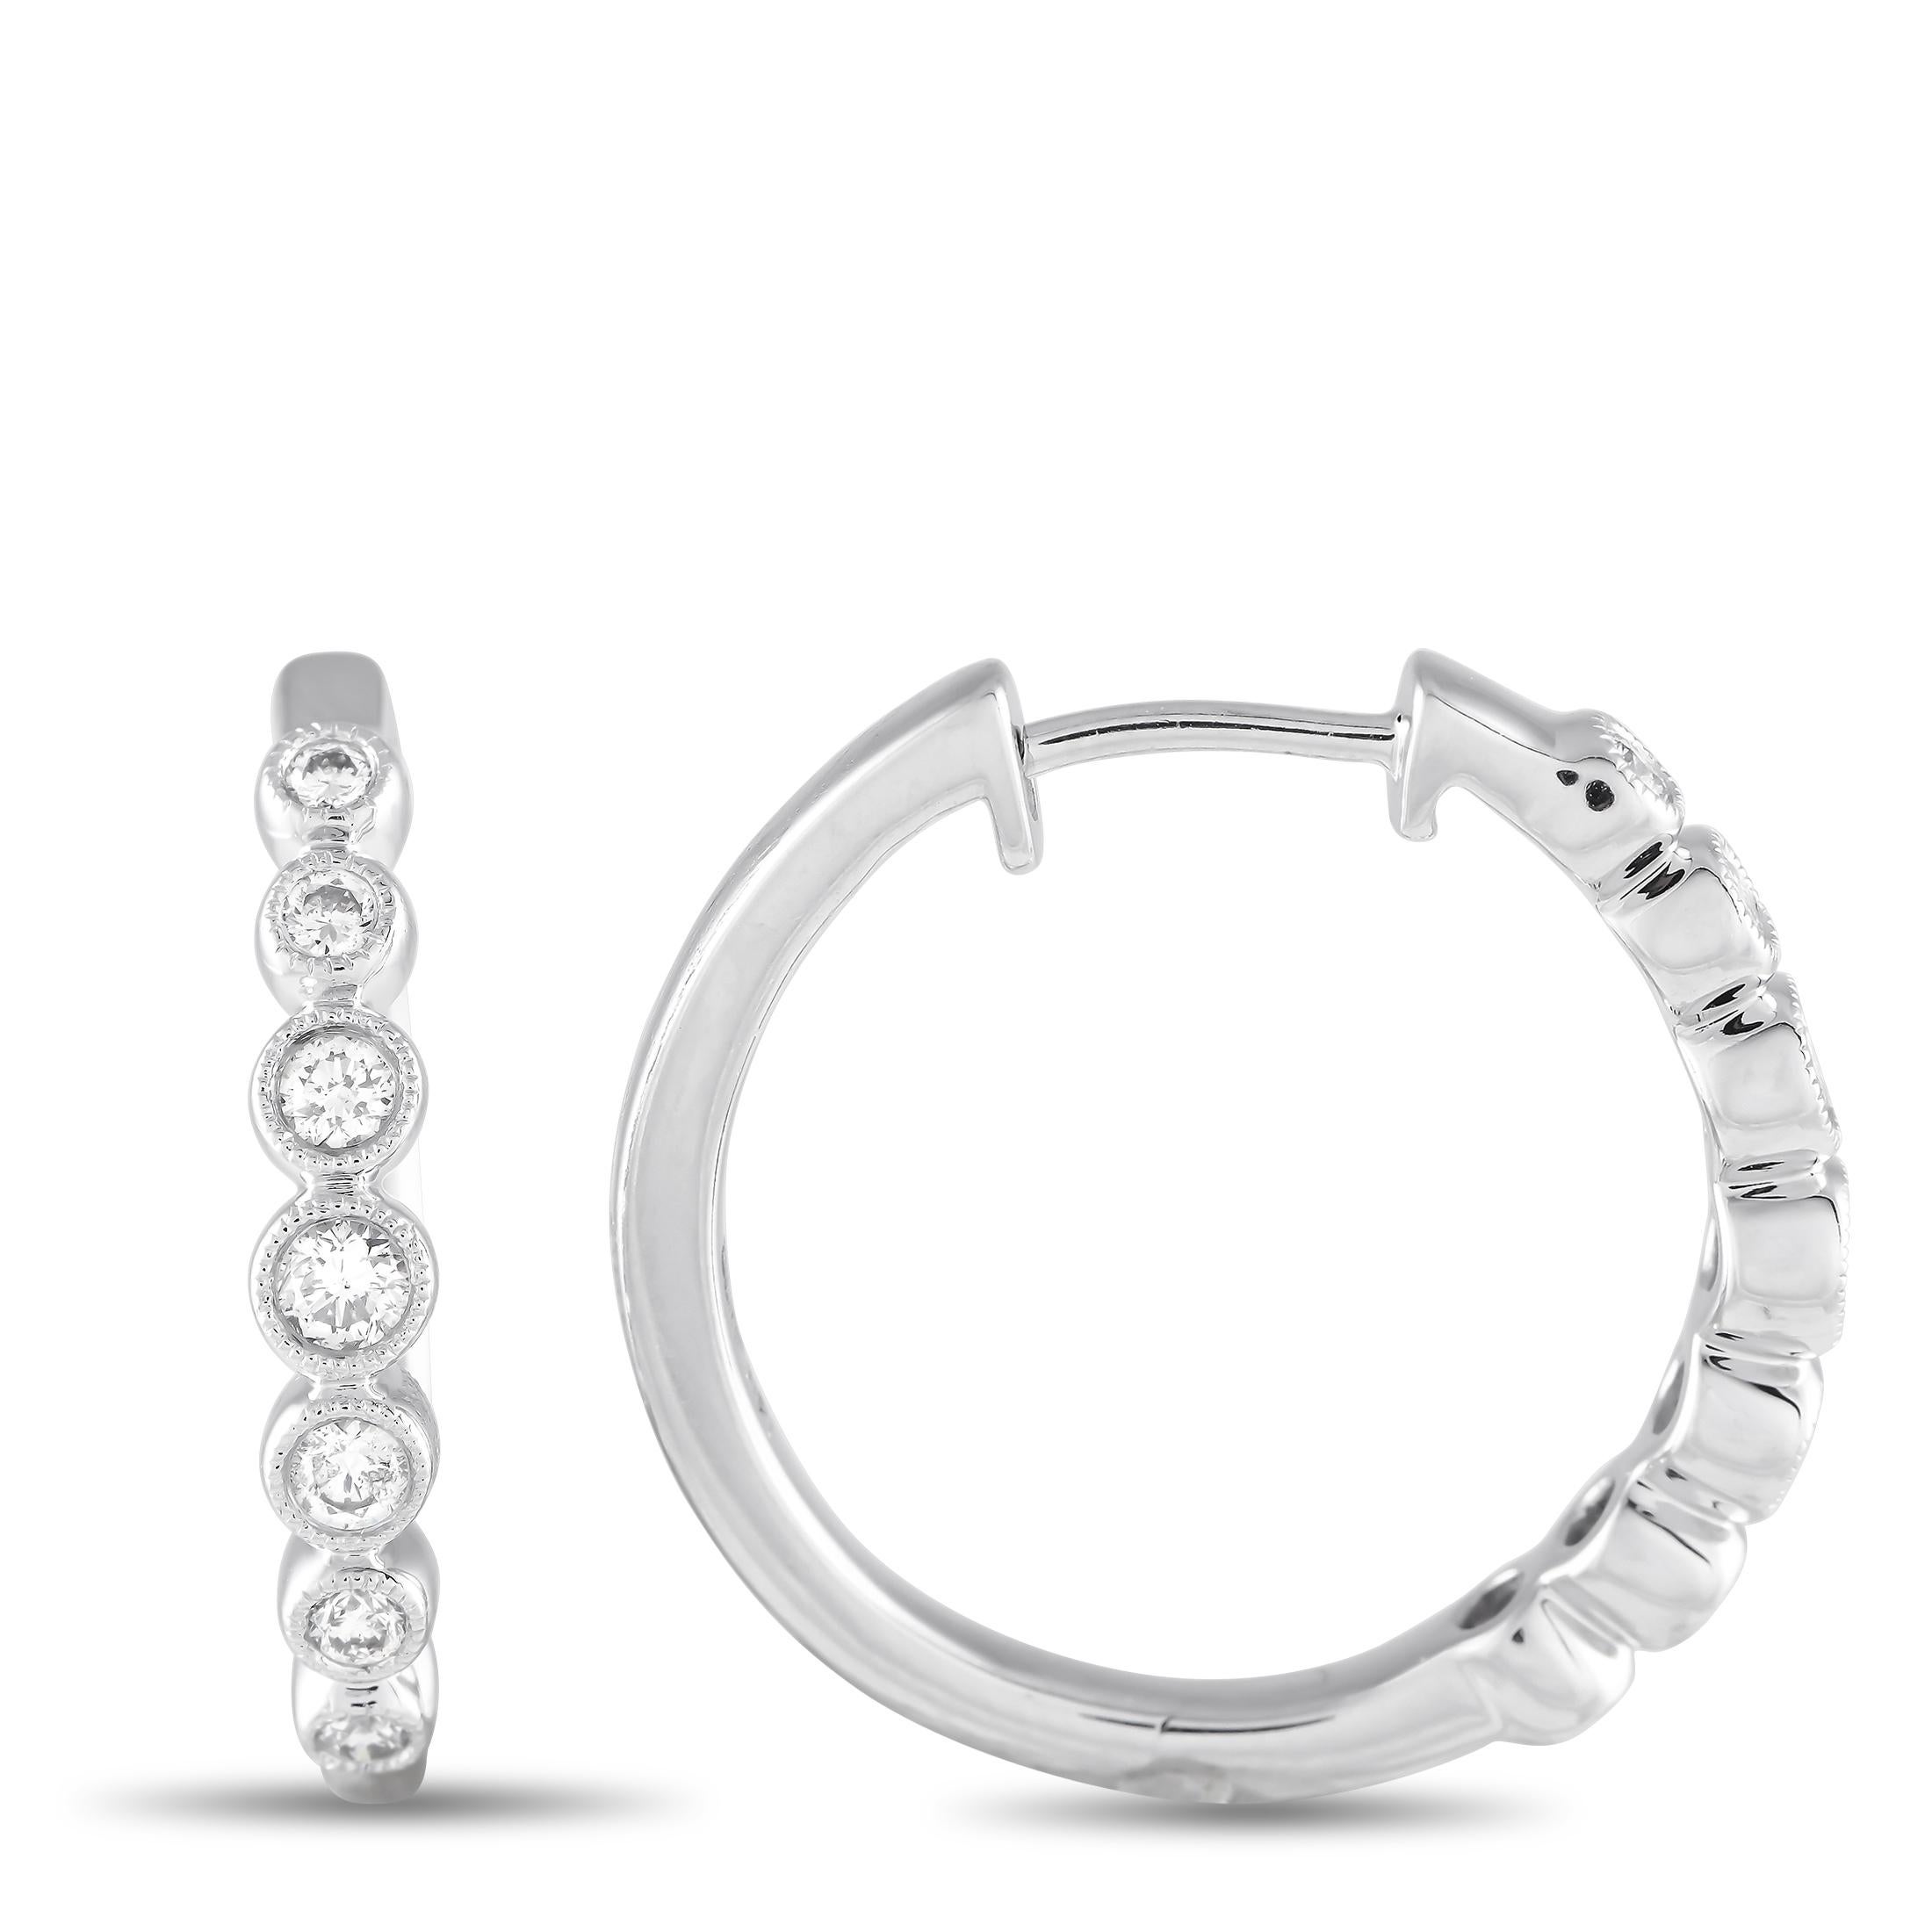 Eine Reihe von Diamanten in Lünettenfassung mit einem Gesamtgewicht von 0,50 Karat machen diese tadellos gefertigten Ohrringe zu etwas ganz Besonderem. Dieses moderne Accessoire mit einem Durchmesser von 0,85 mm und einer Fassung aus 14-karätigem